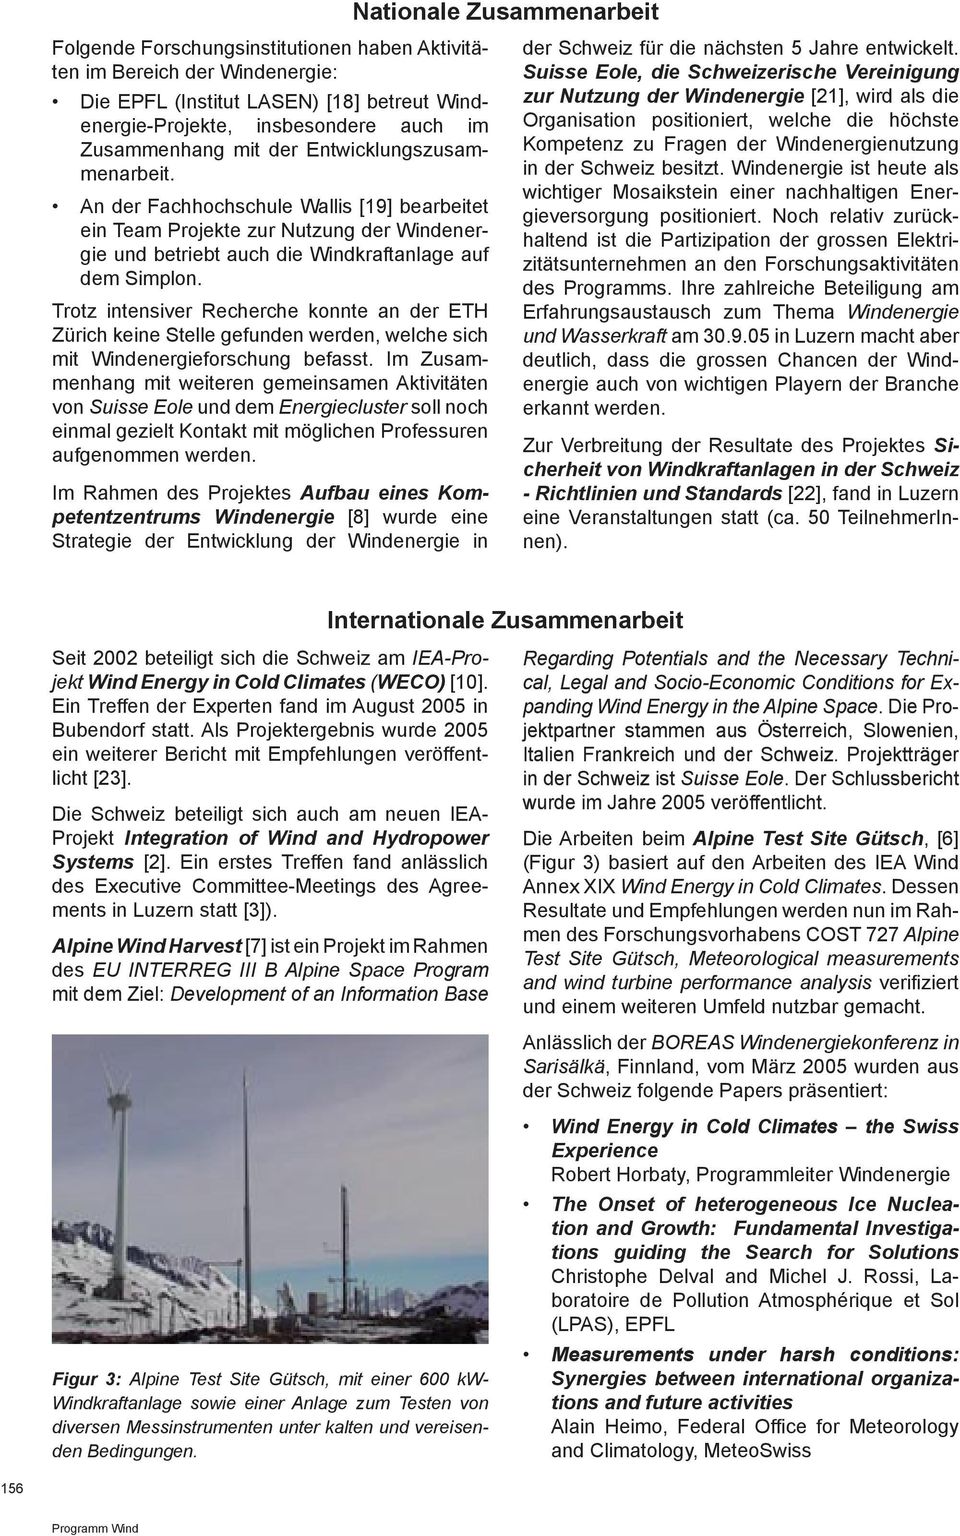 Trotz intensiver Recherche konnte an der ETH Zürich keine Stelle gefunden werden, welche sich mit Windenergieforschung befasst.